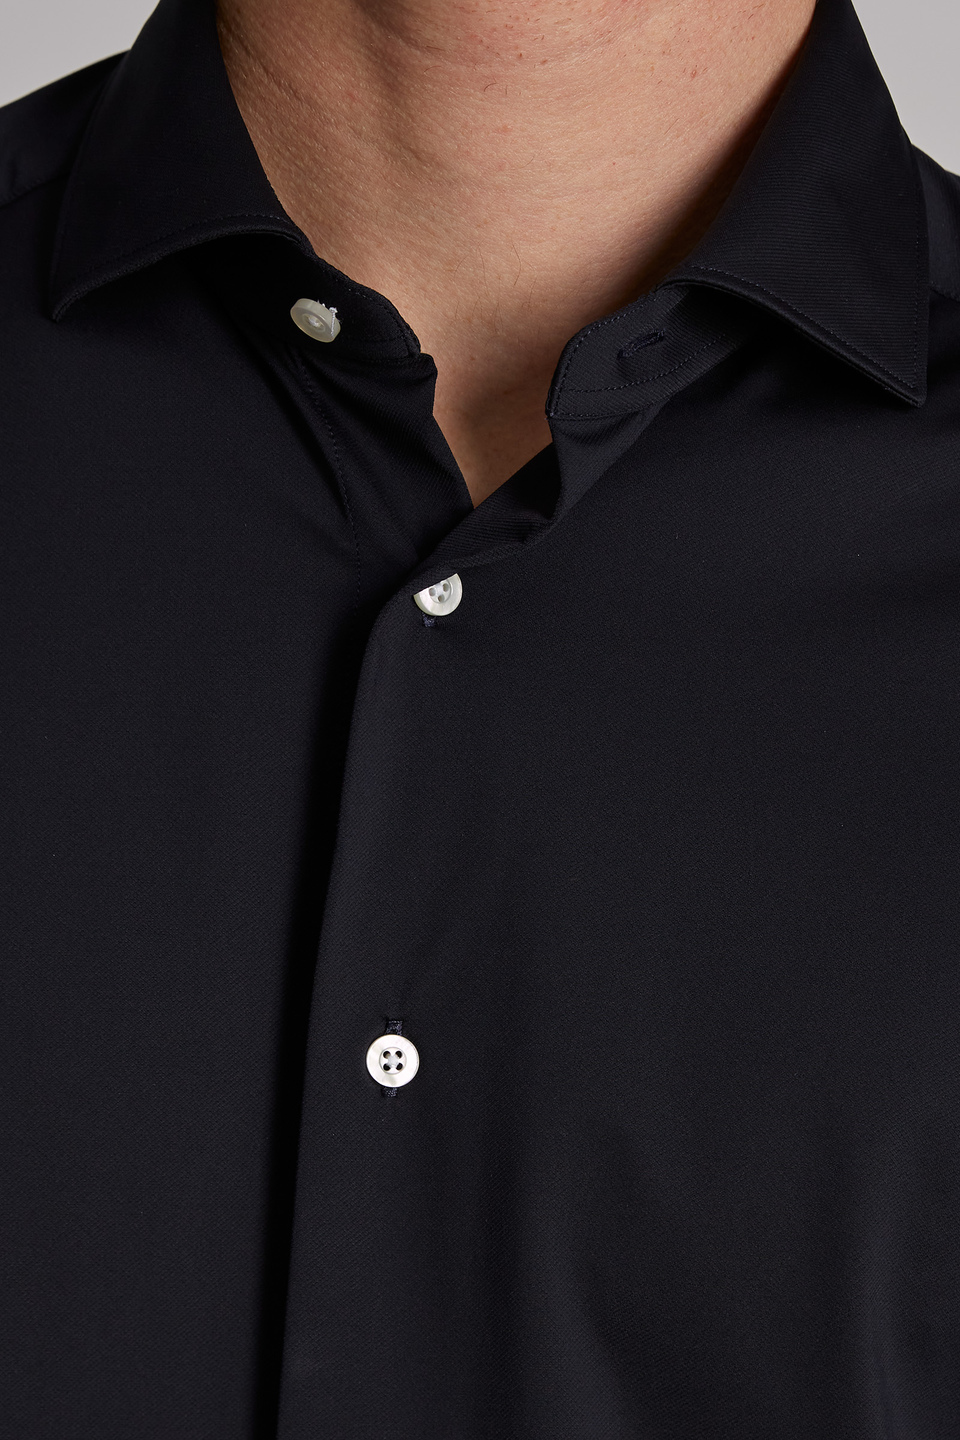 Blue Ribbon-Herrenhemd aus Baumwolljersey und langen Ärmeln im klassischen Schnitt - La Martina - Official Online Shop